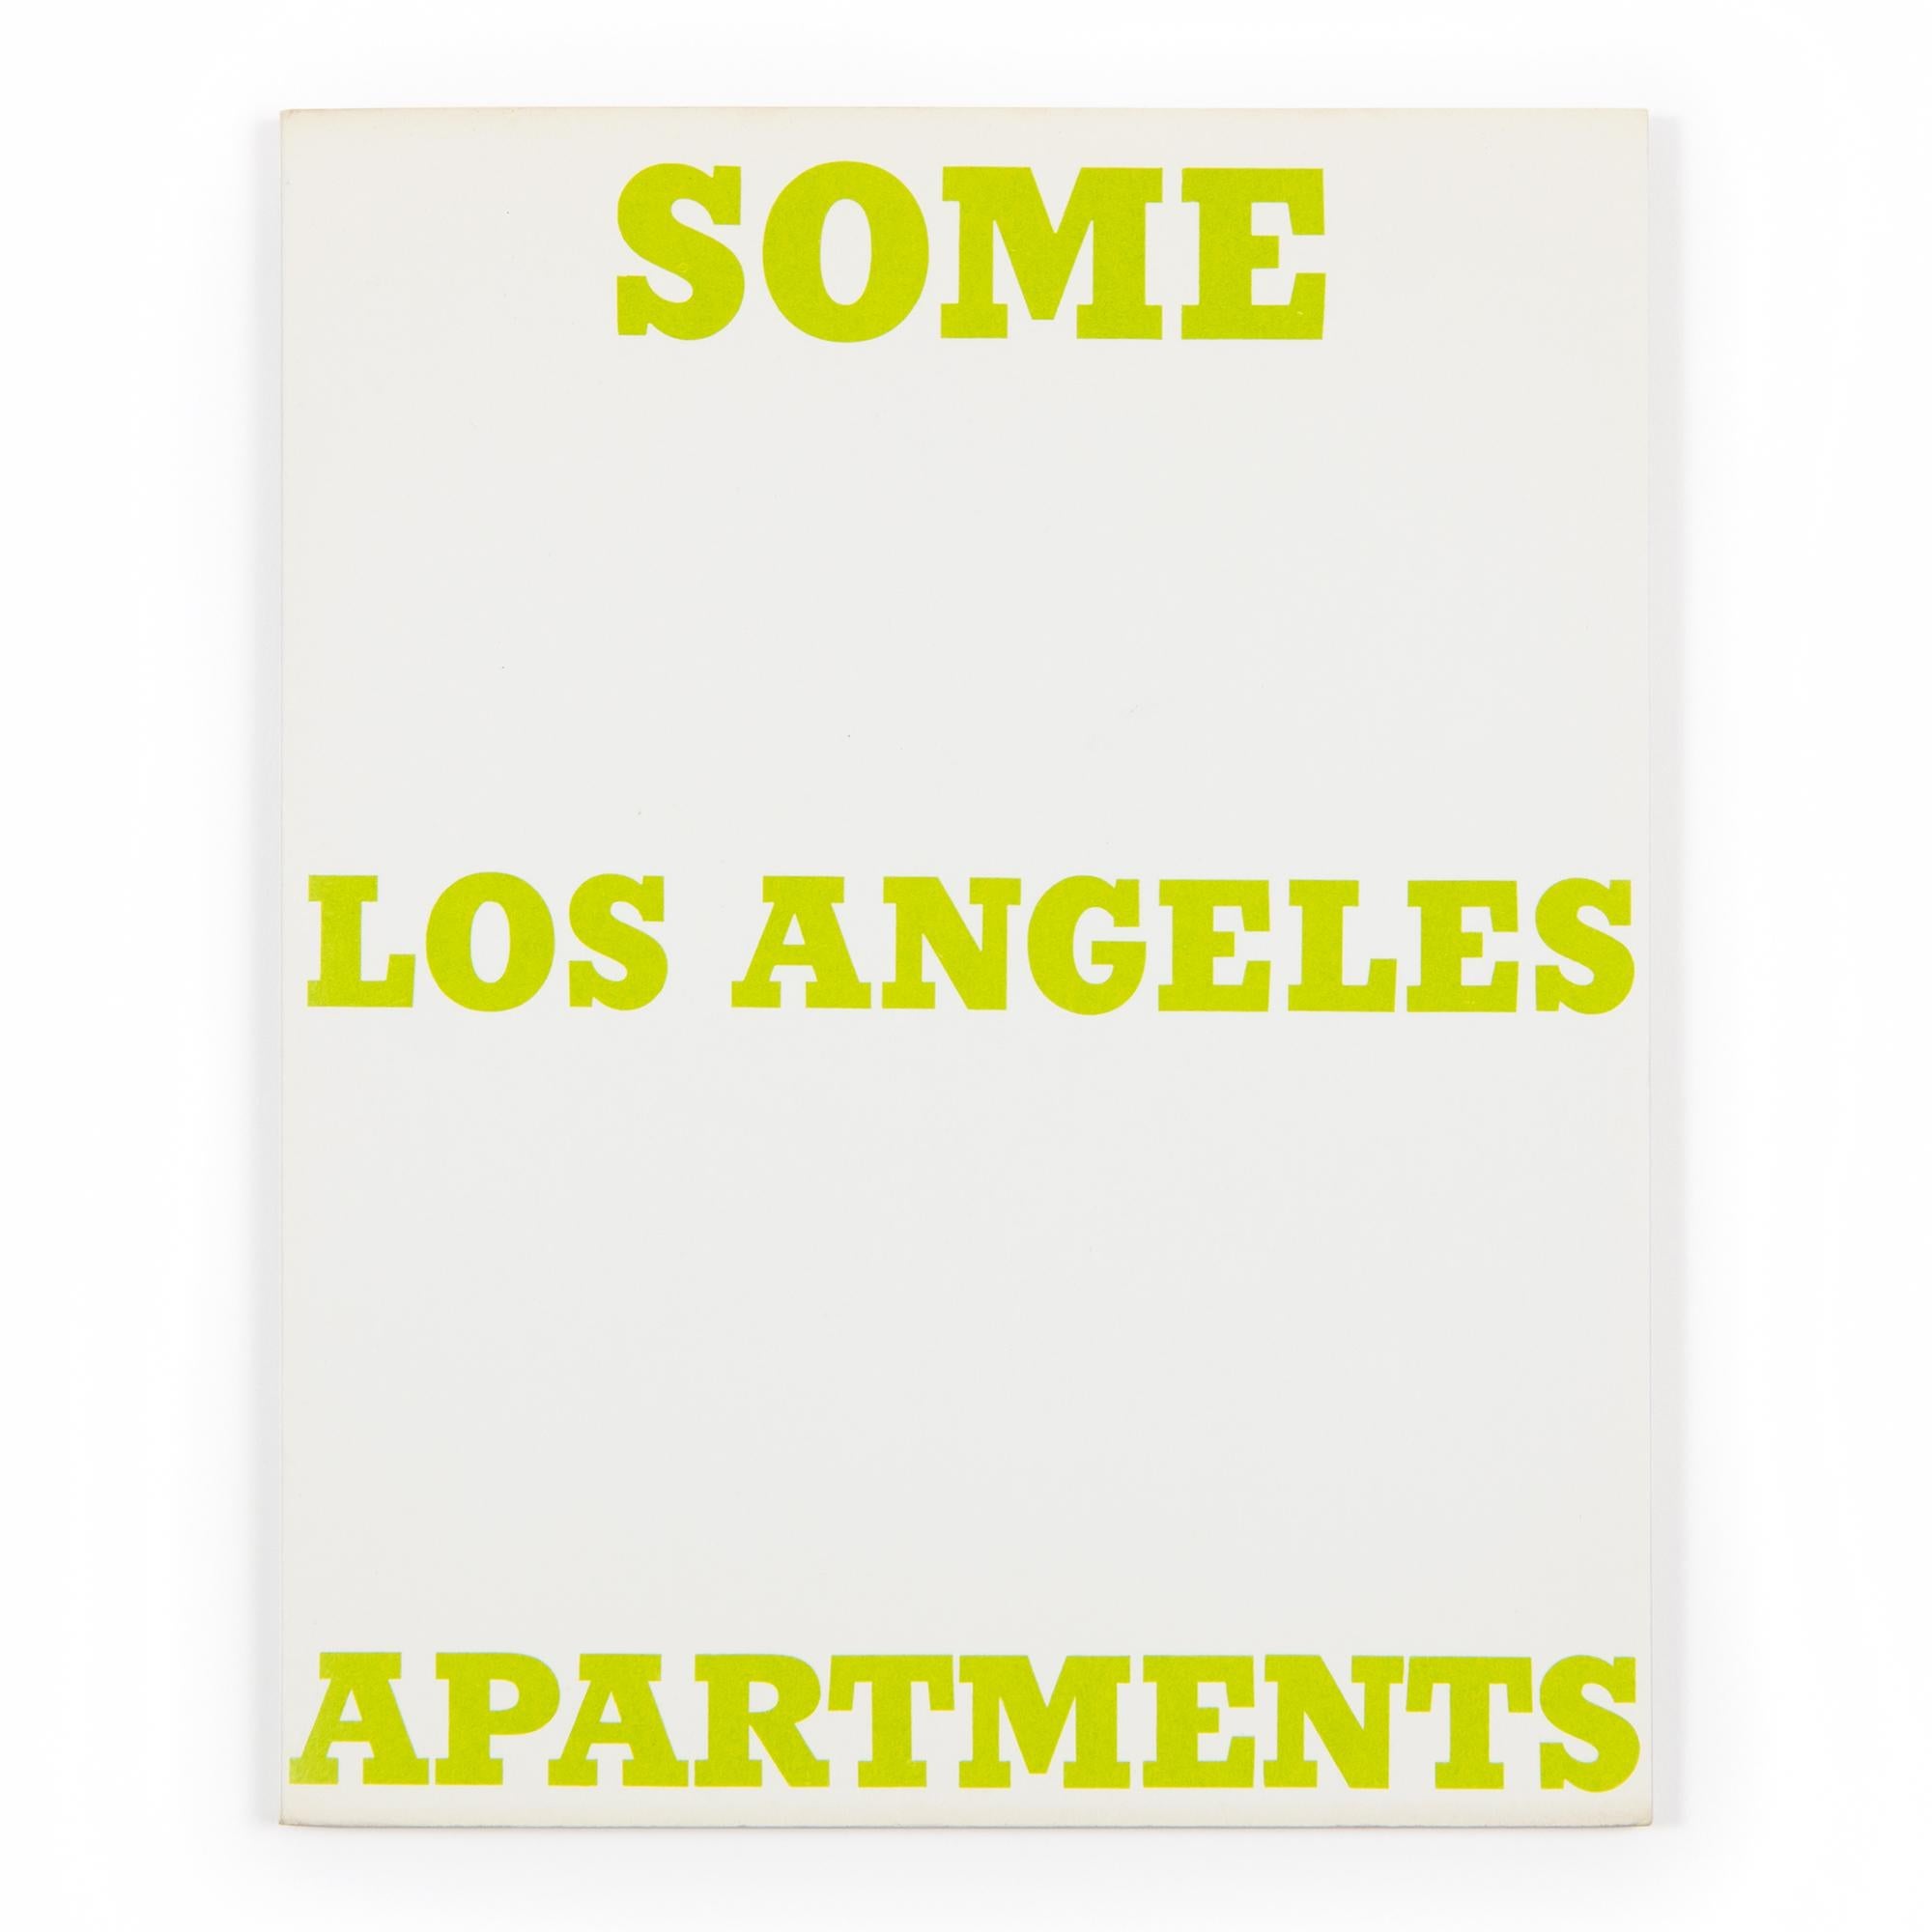 Ed Ruscha (américain, né en 1937)
Quelques appartements de Los Angeles, 1965/1970
Support : Livre d'artiste (impression offset en noir sur papier texte Vellum blanc de 100 lb)
Dimensions : 17,8 x 14 x 0,5 cm (7 x 5 1/2 x 3/16 in) : 17,8 x 14 x 0,5